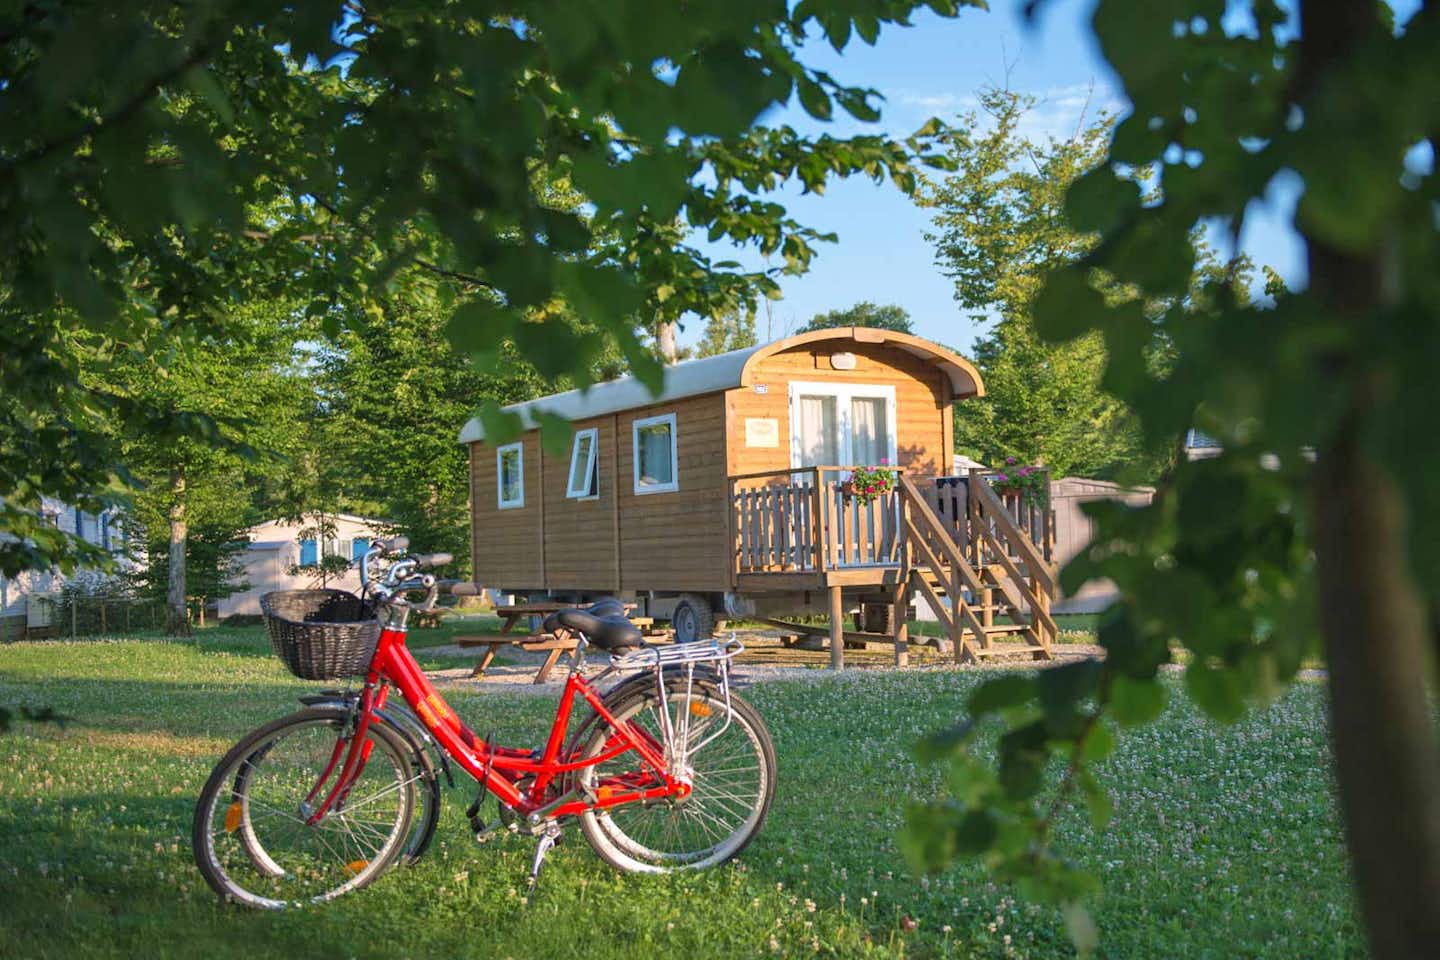 Yelloh! Village en Champagne -  Chalet mit Veranda und Fahrräder im Grünen auf dem Campingplatz